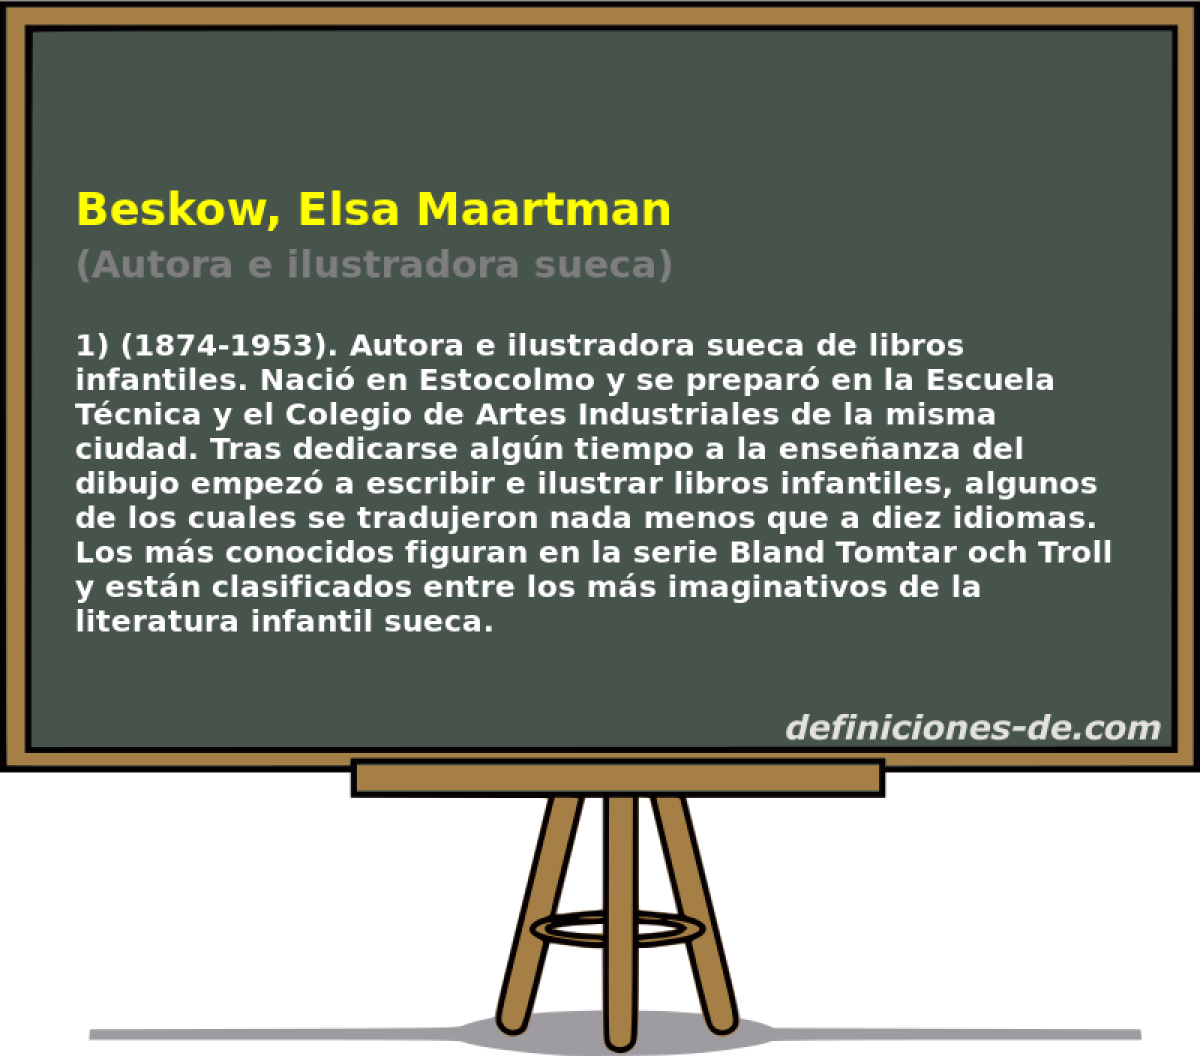 Beskow, Elsa Maartman (Autora e ilustradora sueca)